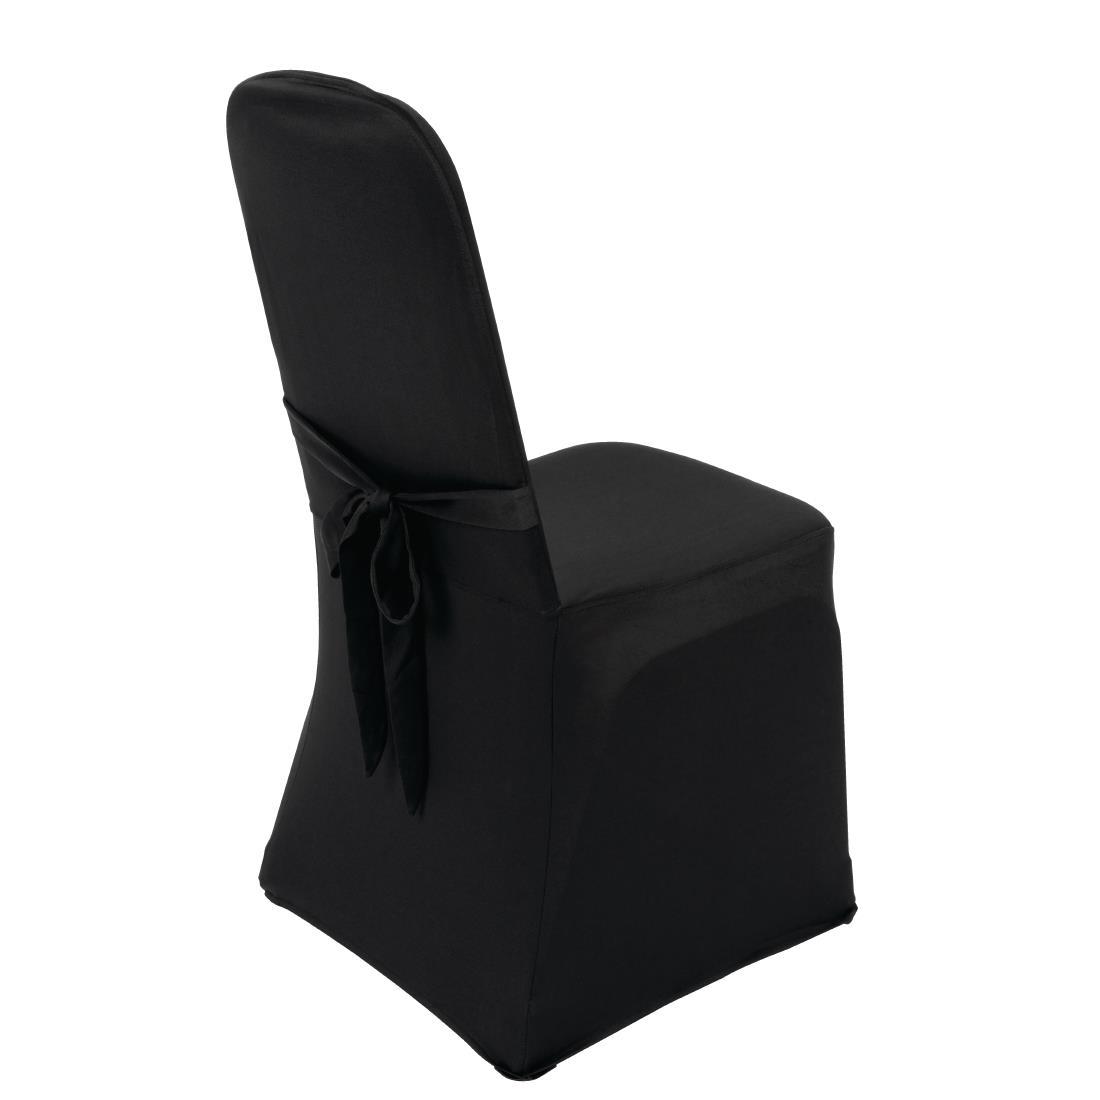 Bolero Banquet Chair Cover Black - DP923  - 4